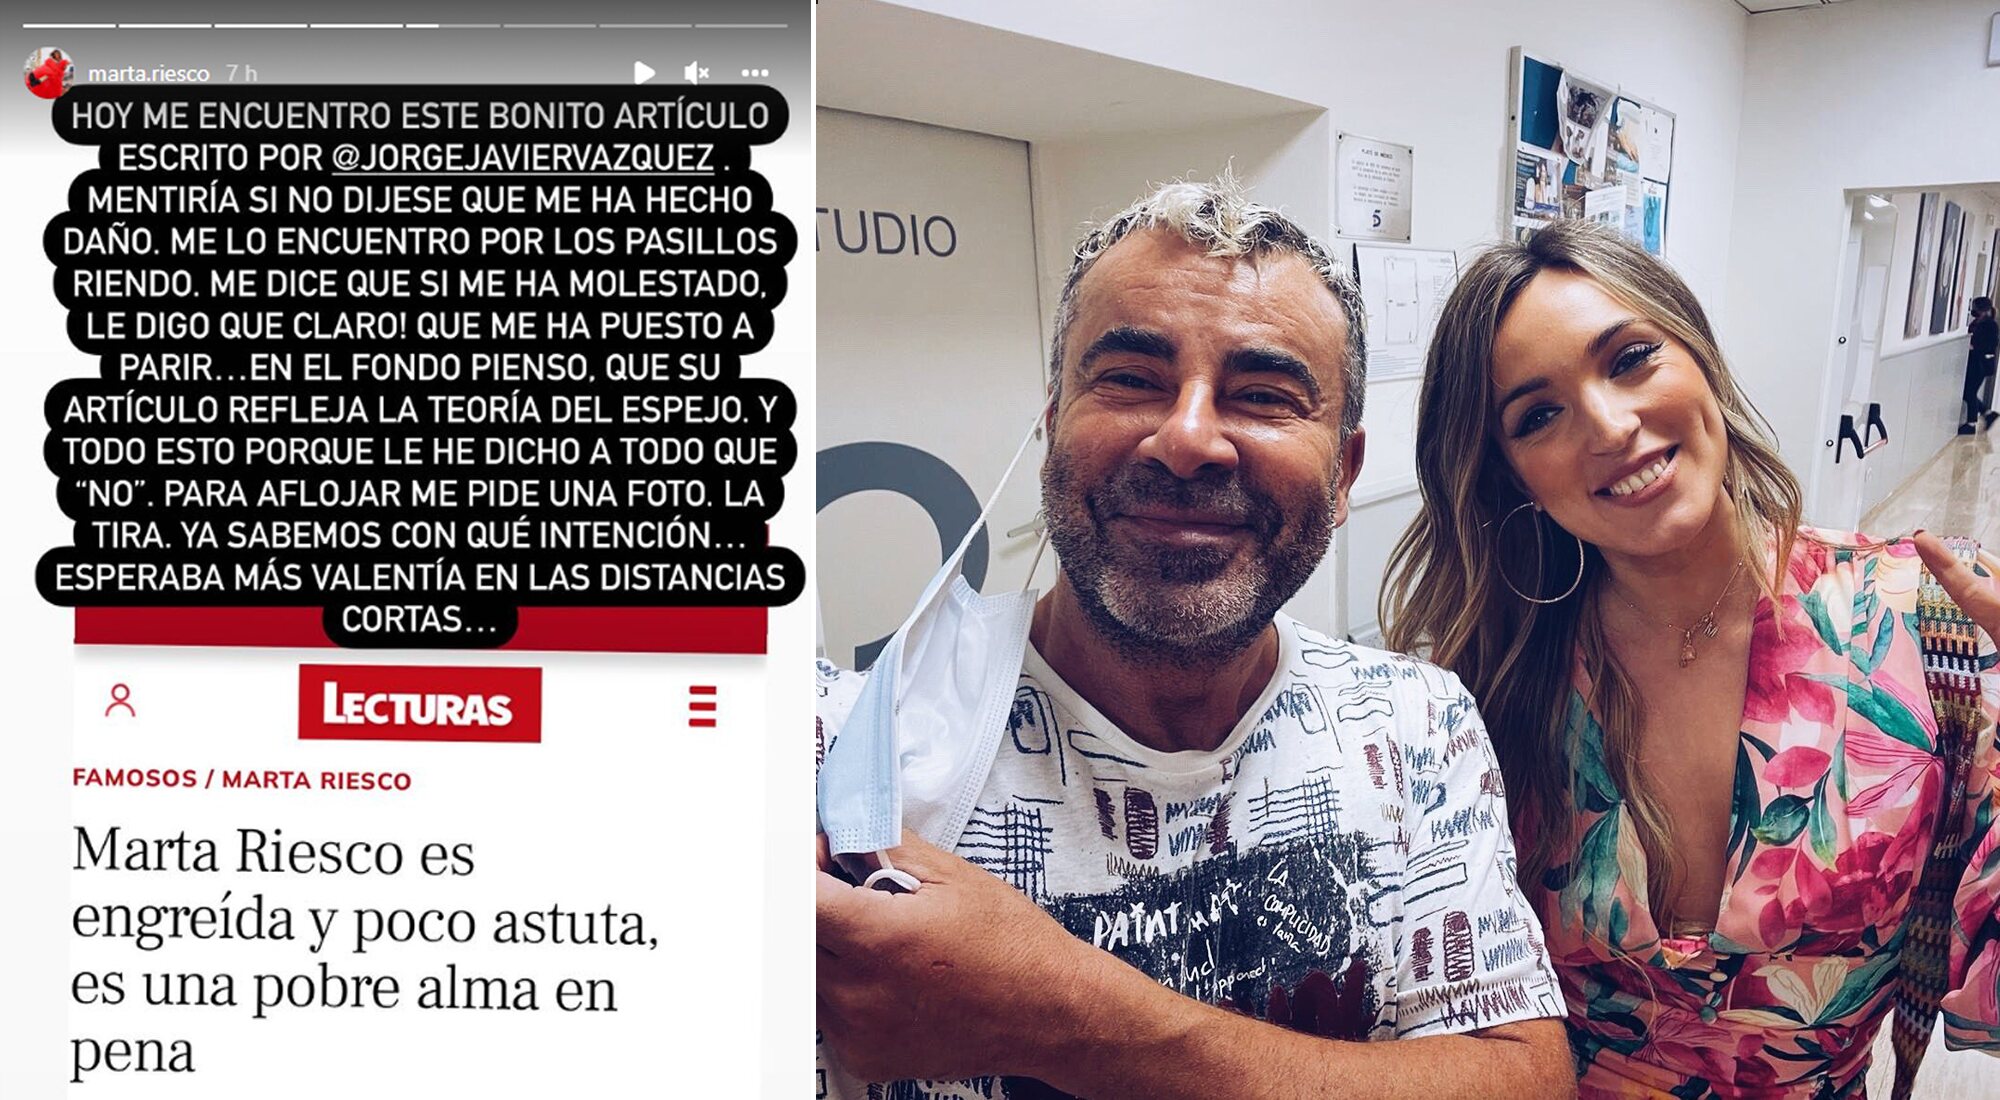 La réplica de Marta Riesco a las críticas de Jorge Javier y la imagen de ambos publicada por el presentador